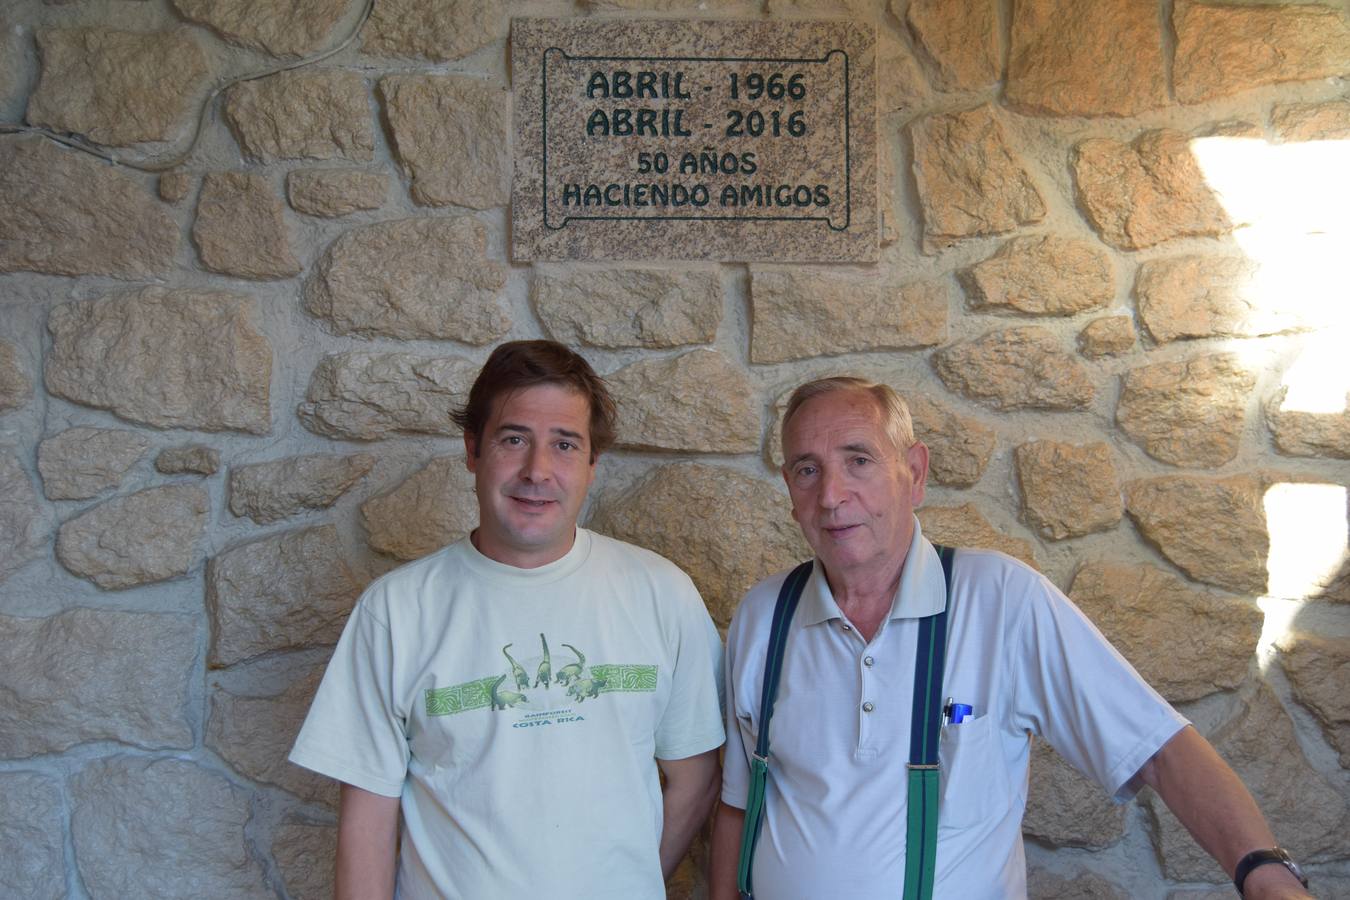 Mariano y Pablo Estévez, junto a la placa conmemorativa de los 50 años de aniversario 